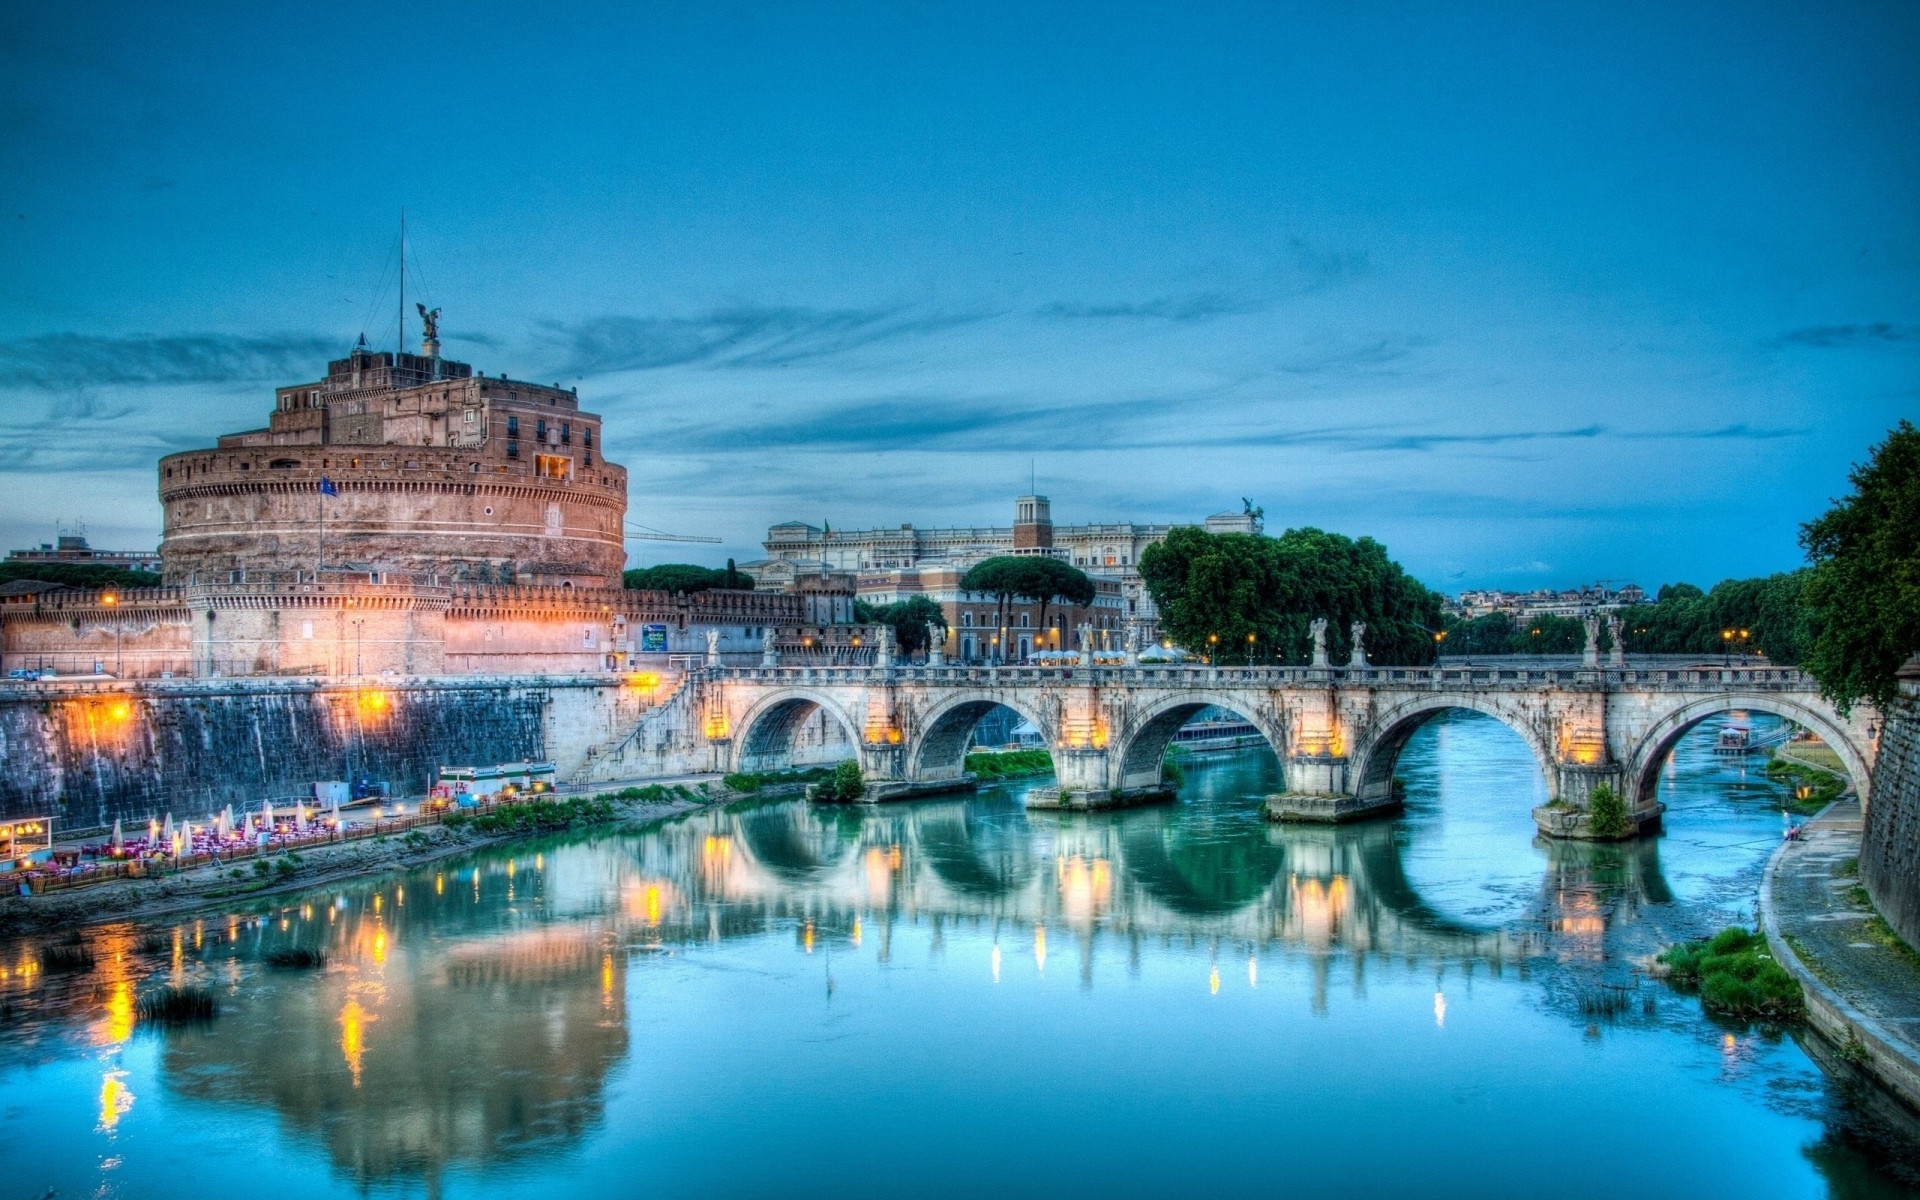 Картинки Рим, замок Сан-Анжело, мост, Италия, река, тибр, hdr фото и обои на рабочий стол